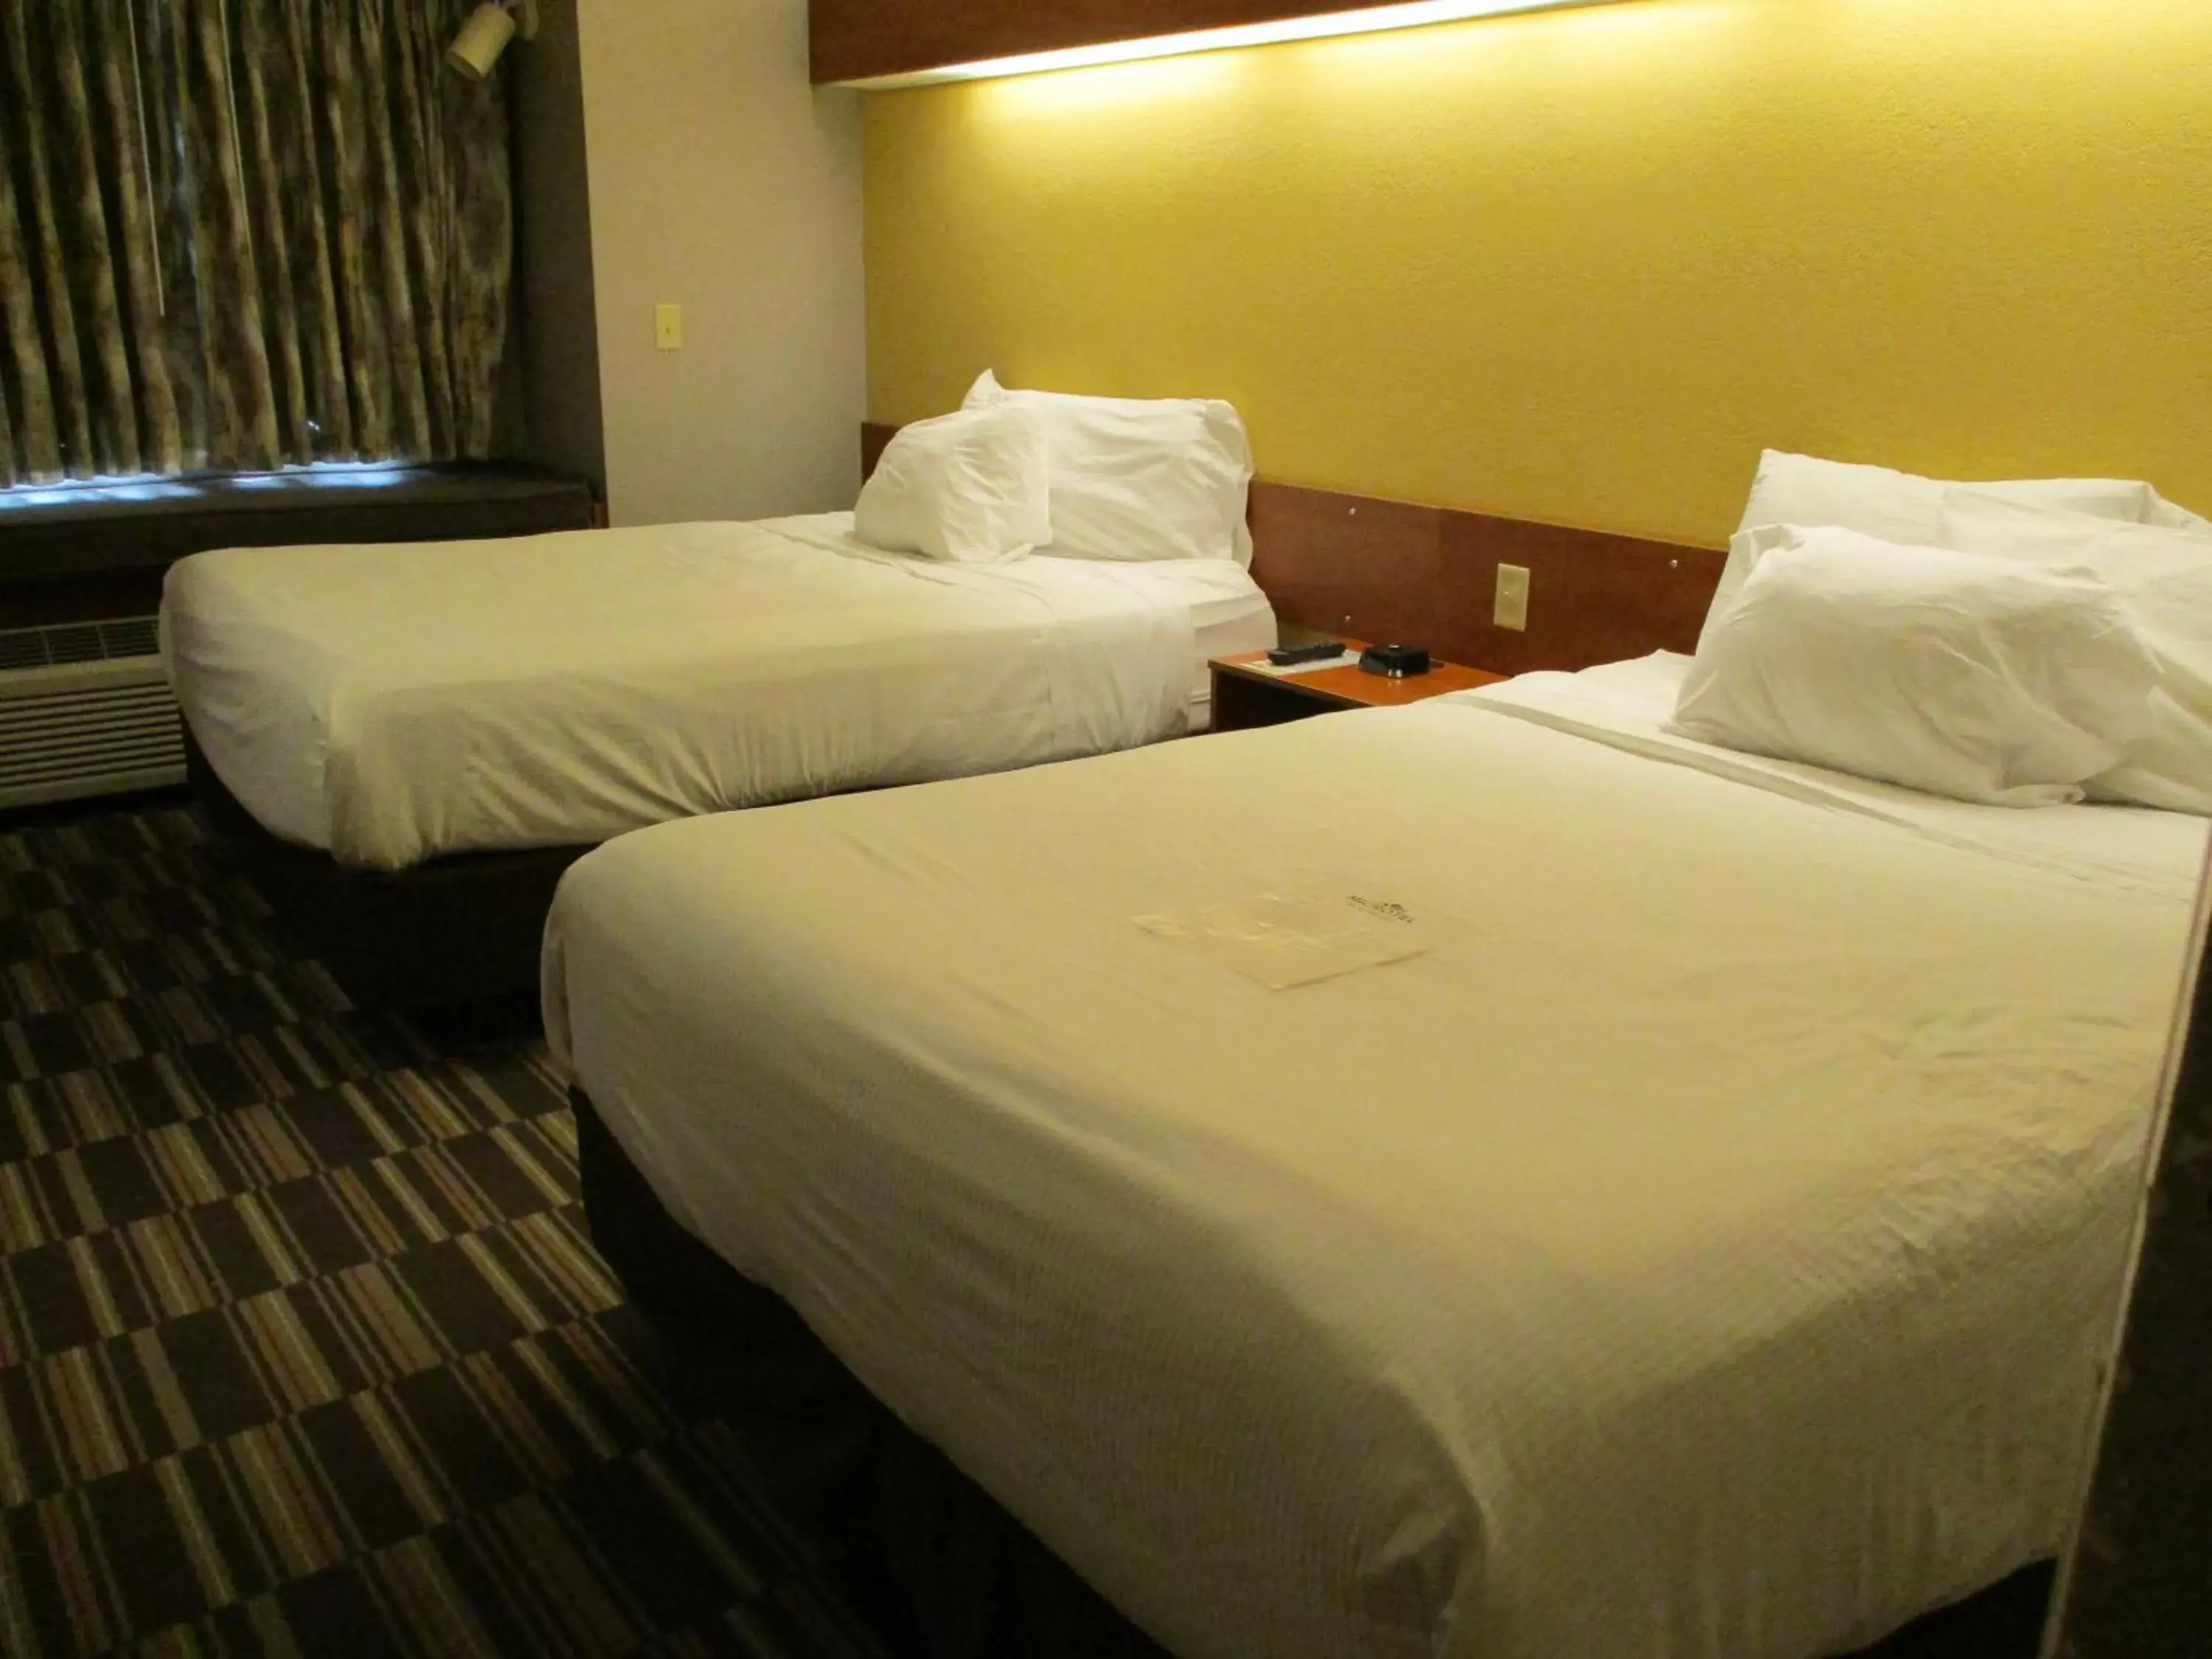 Bedroom, Bed in Microtel Inn & Suites by Wyndham New Ulm